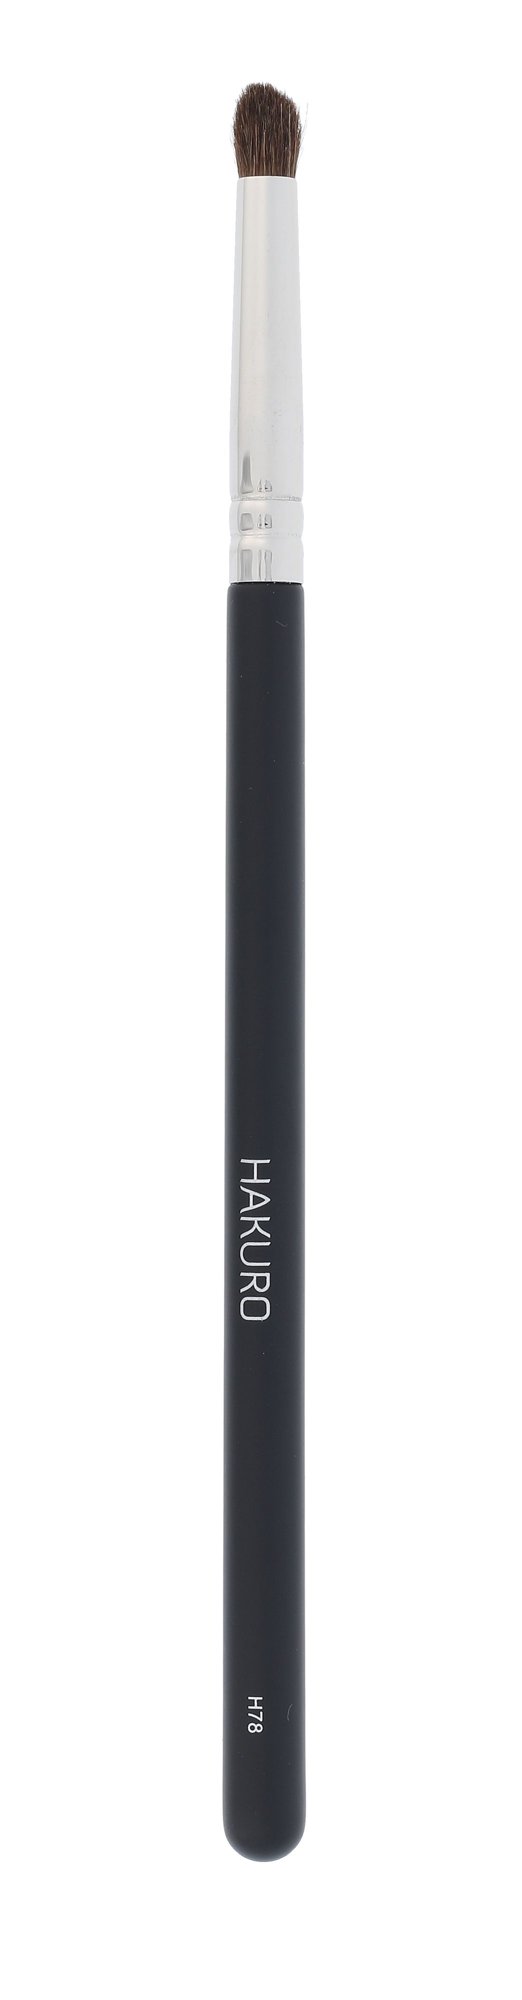 Hakuro Brush H78